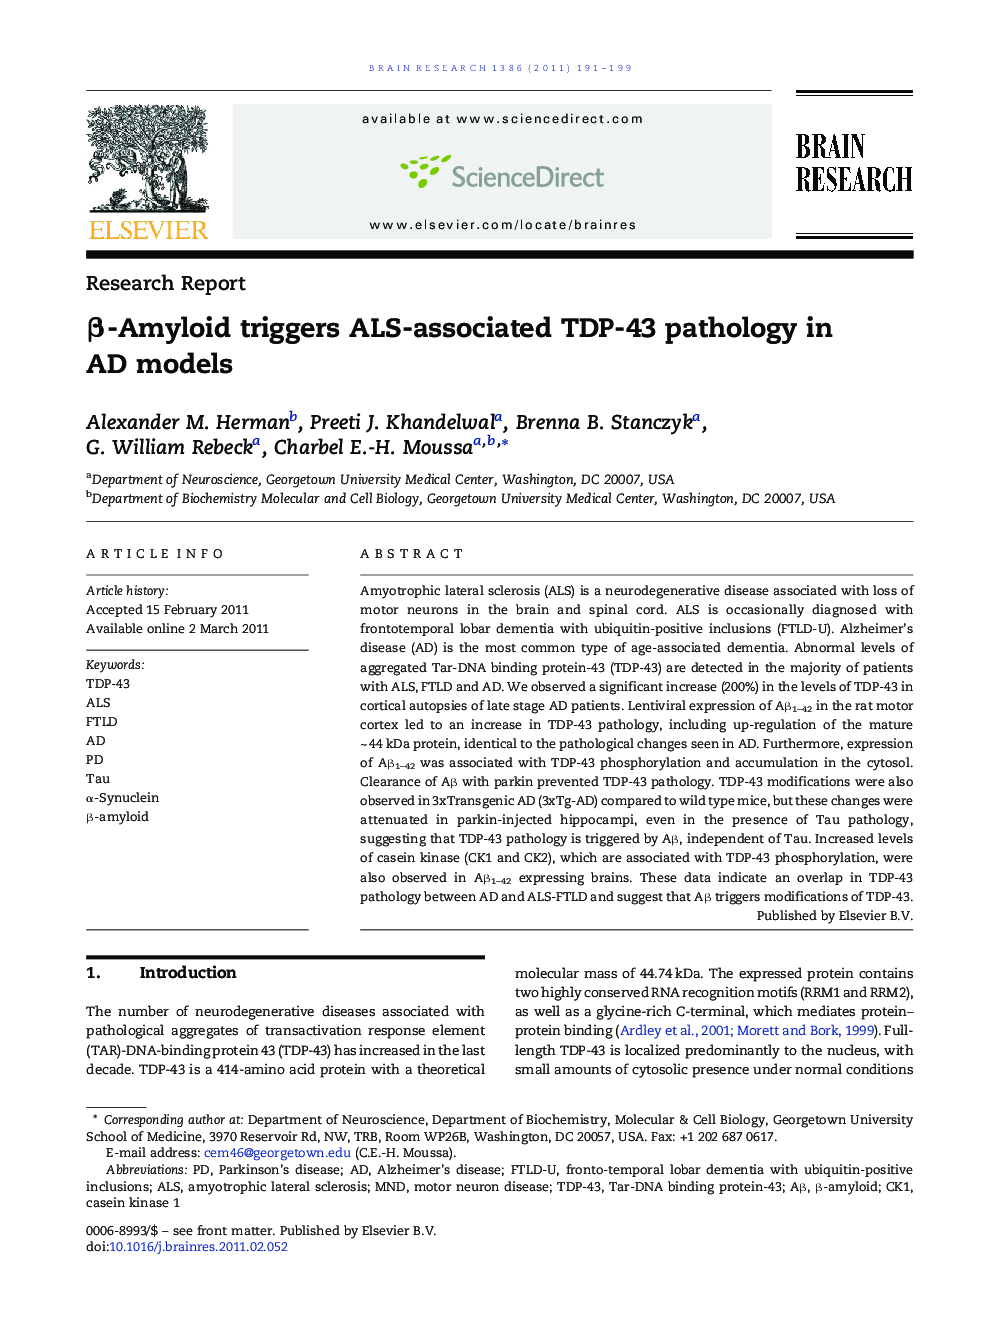 β-Amyloid triggers ALS-associated TDP-43 pathology in AD models